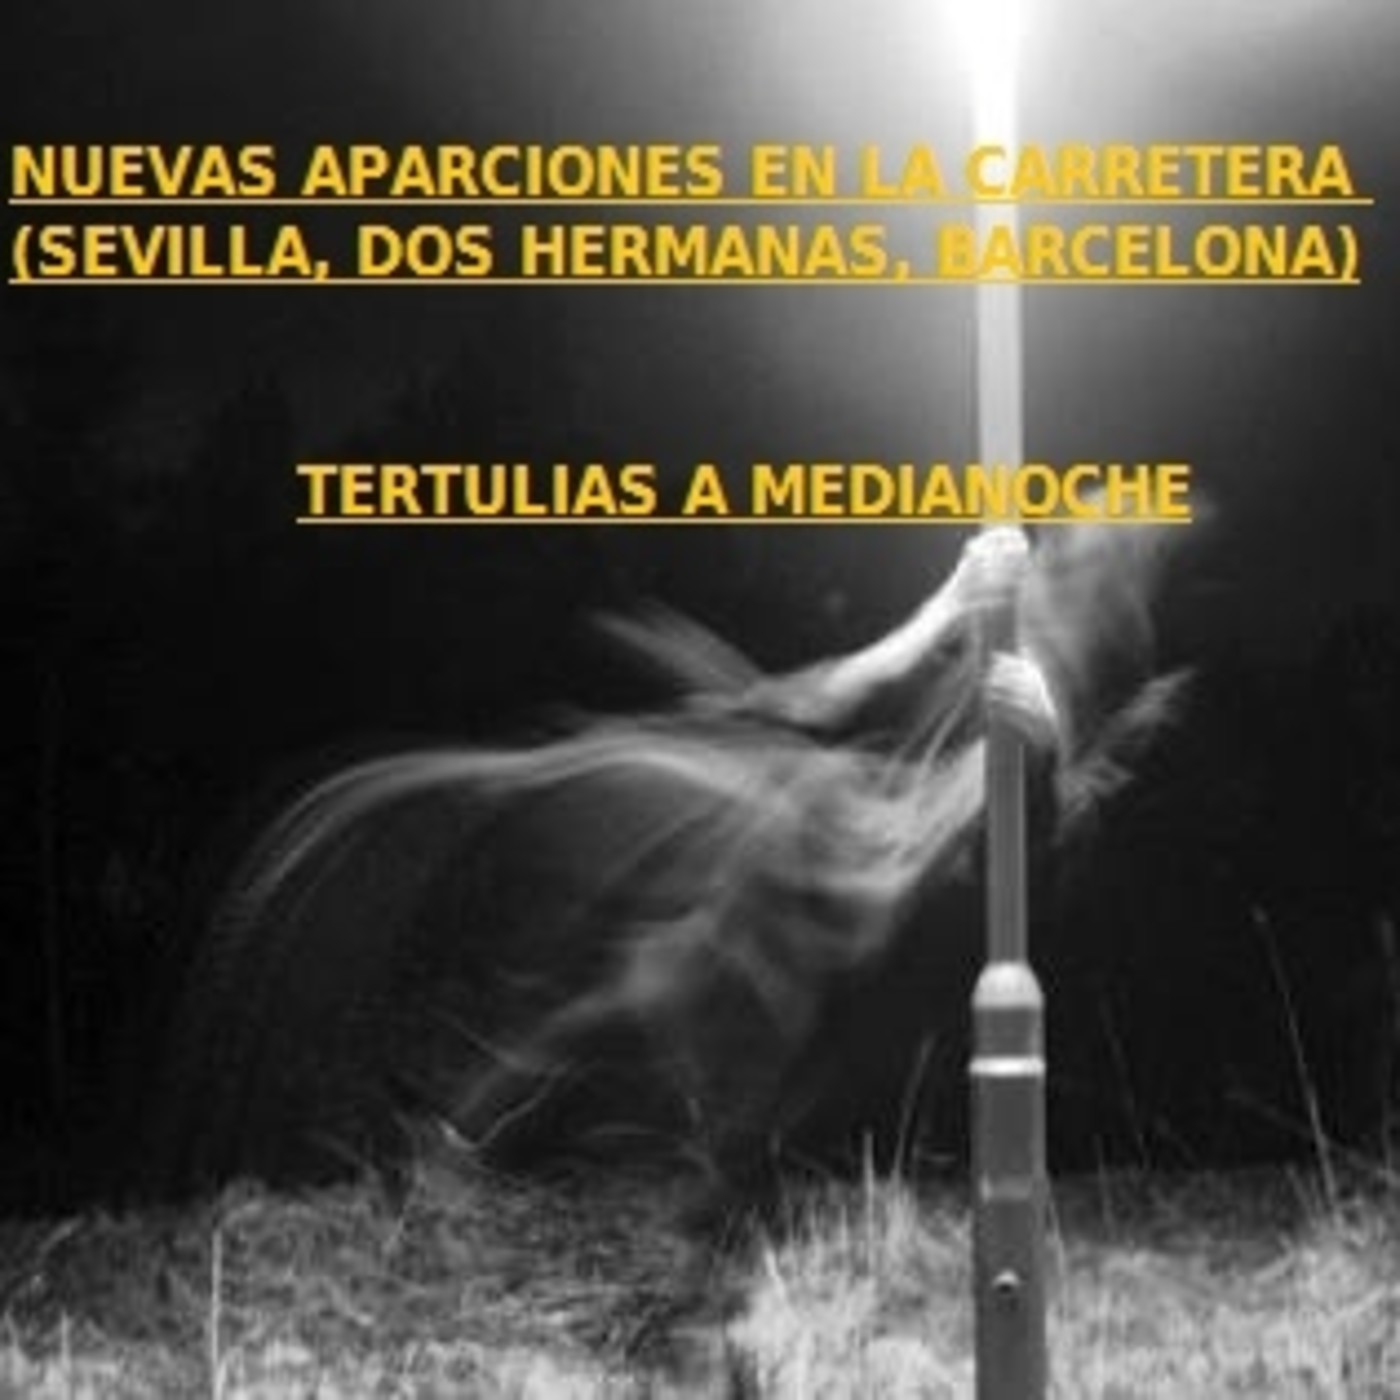 NUEVAS APARICIONES EN LA CARRETERA (SEVILLA, DOS HERMANAS, MÉXICO, BARCELONA)-P03X04 Tertulias a Medianoche